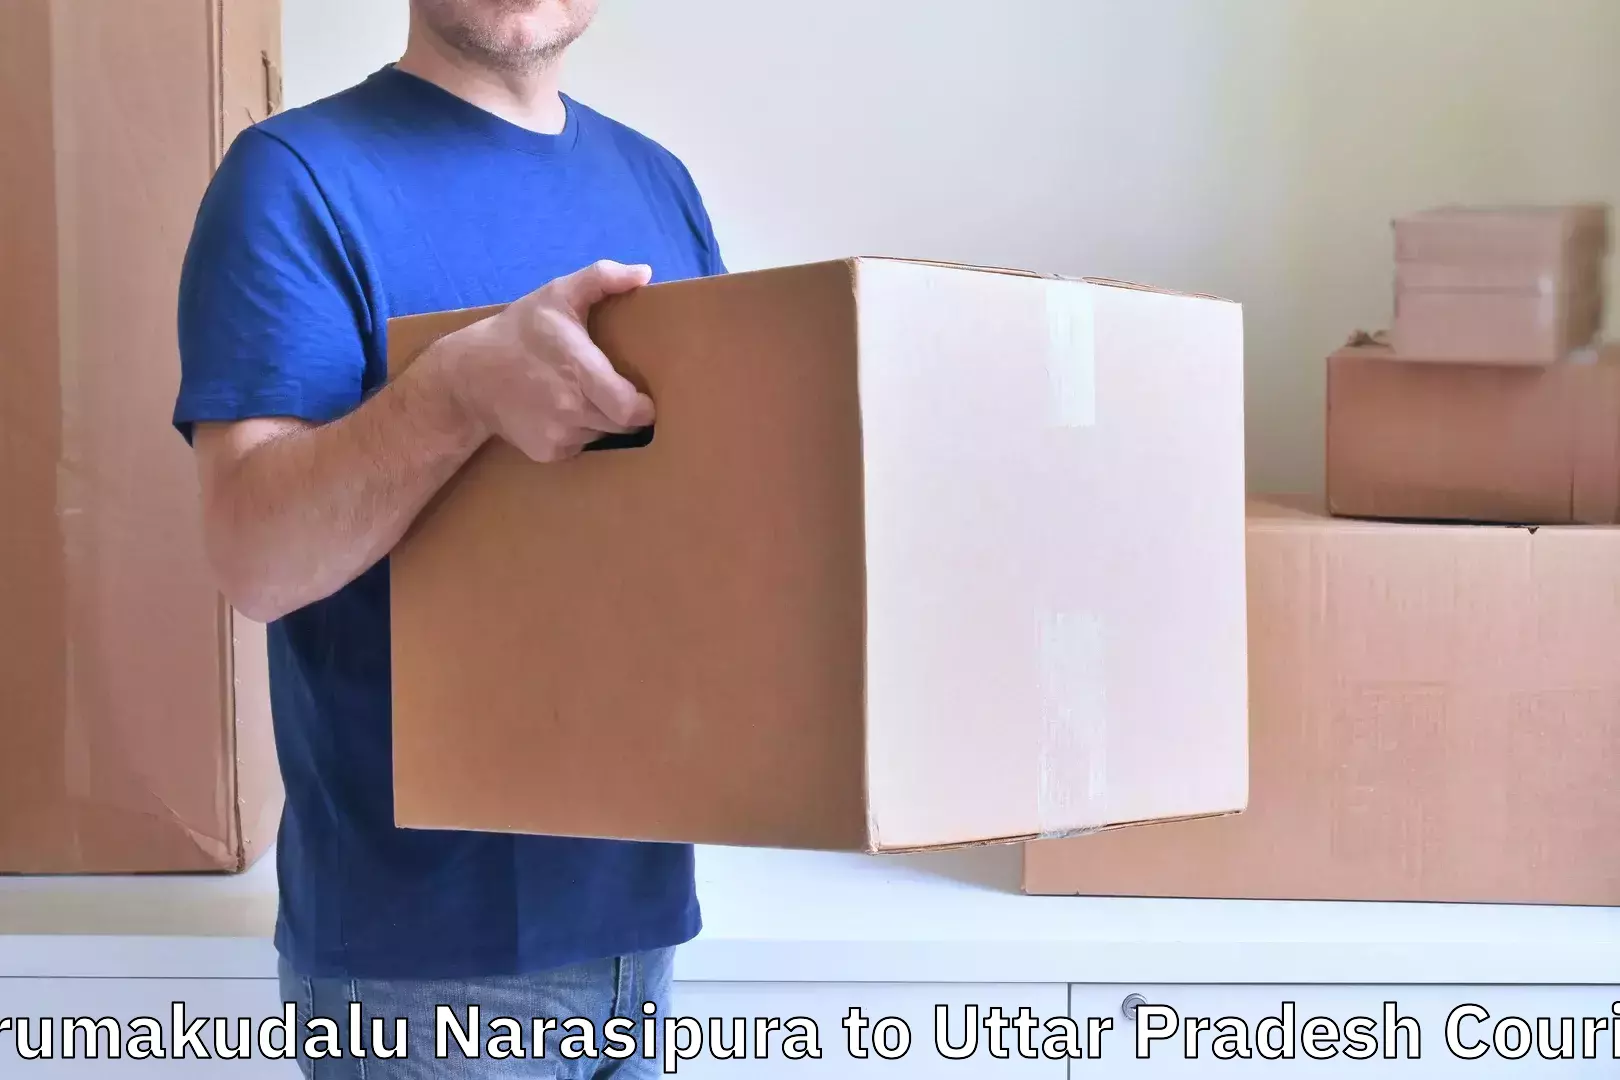 Baggage delivery planning Tirumakudalu Narasipura to Itava